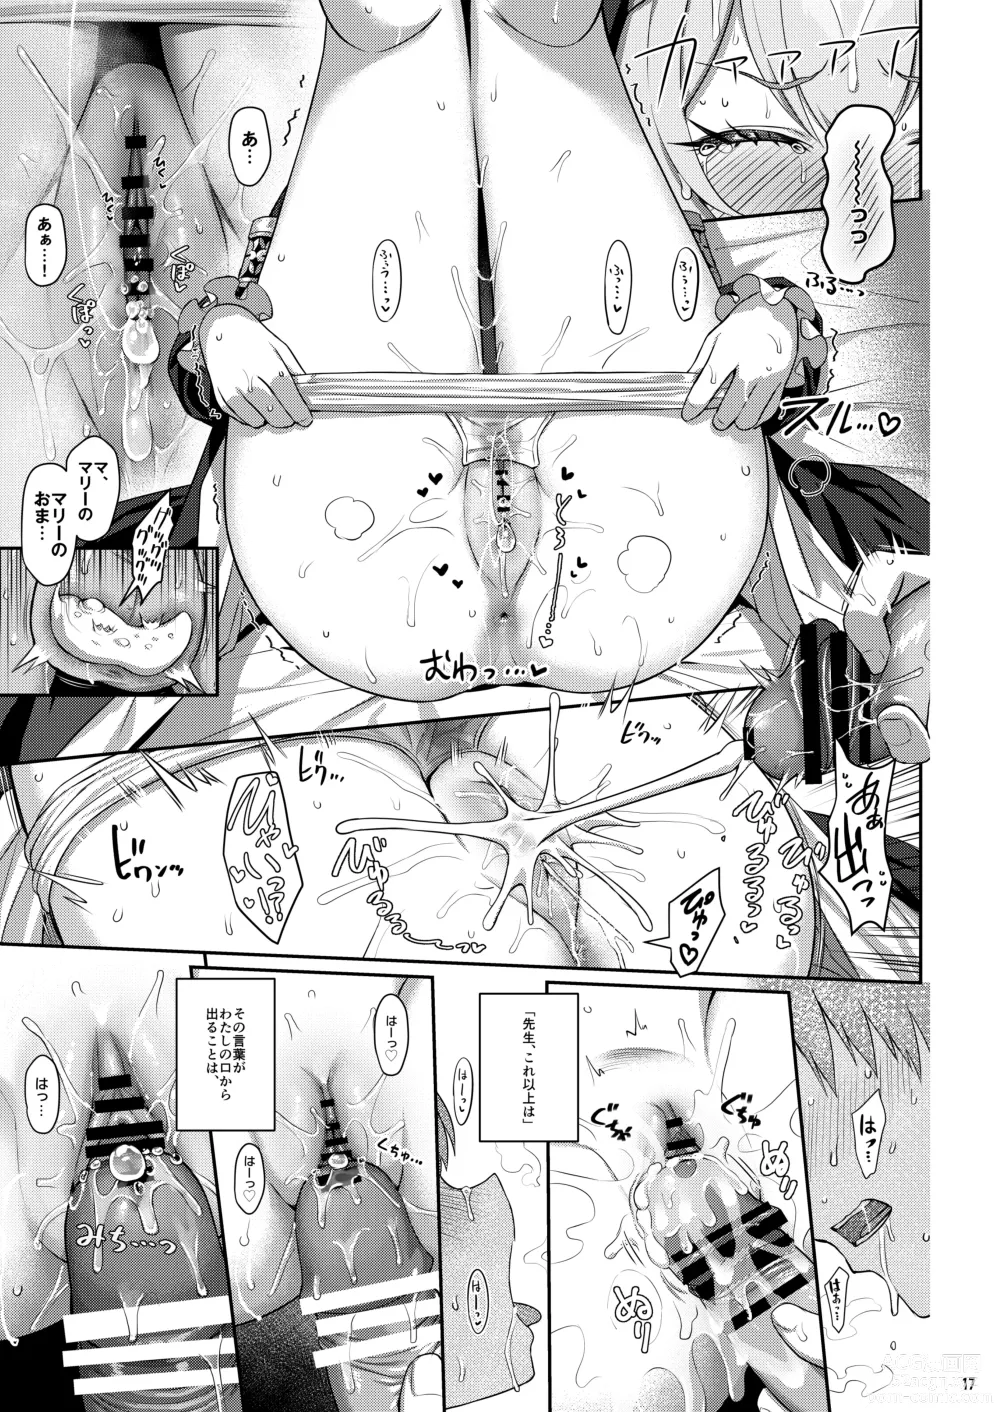 Page 16 of doujinshi Idaraku